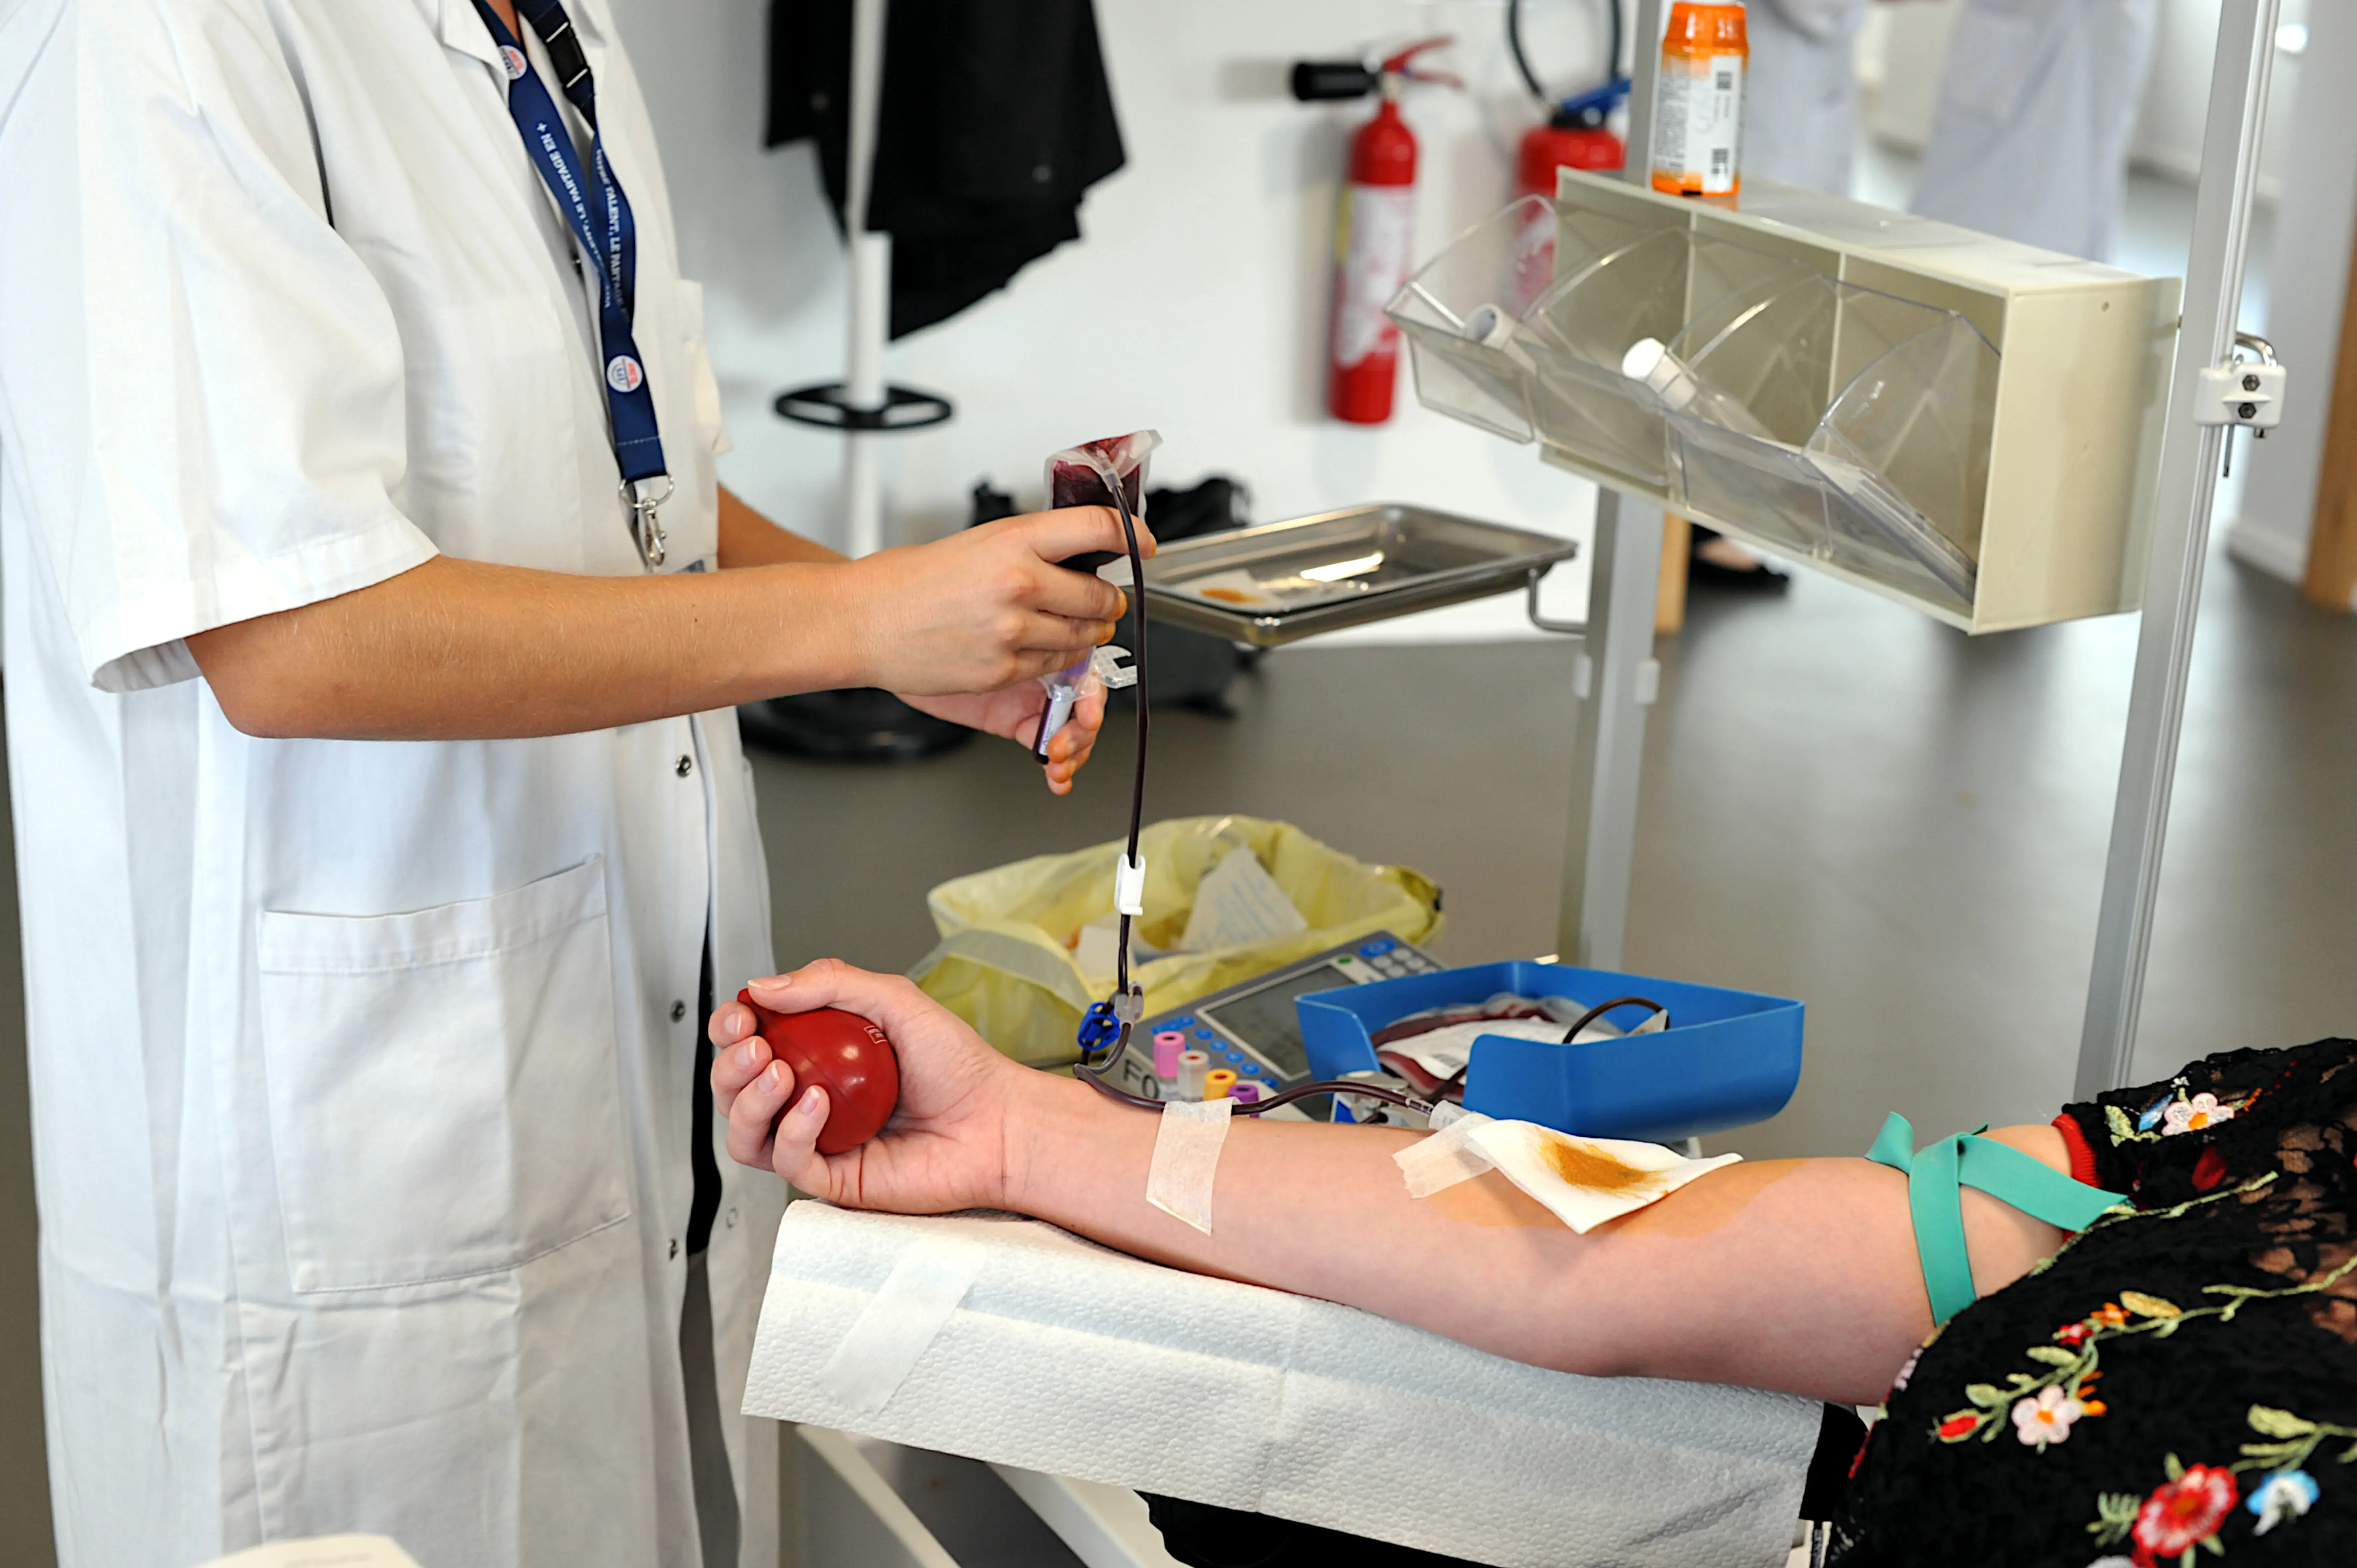 Vue d'une personne en train de donner son sang 